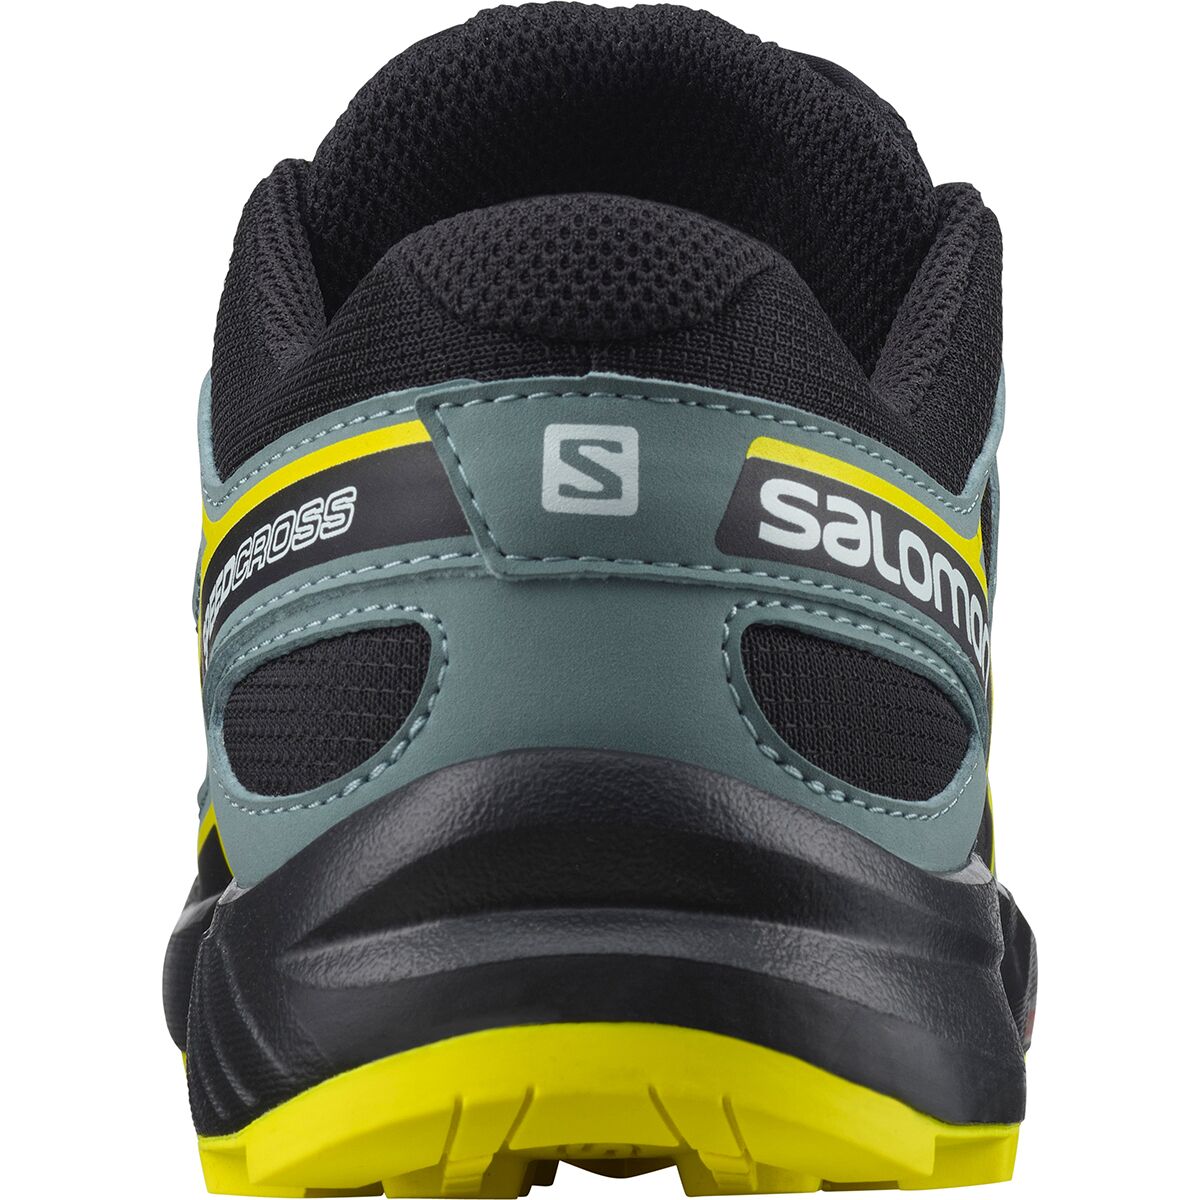 Salomon SpeedCross Hiking Shoe Boys' - Kids